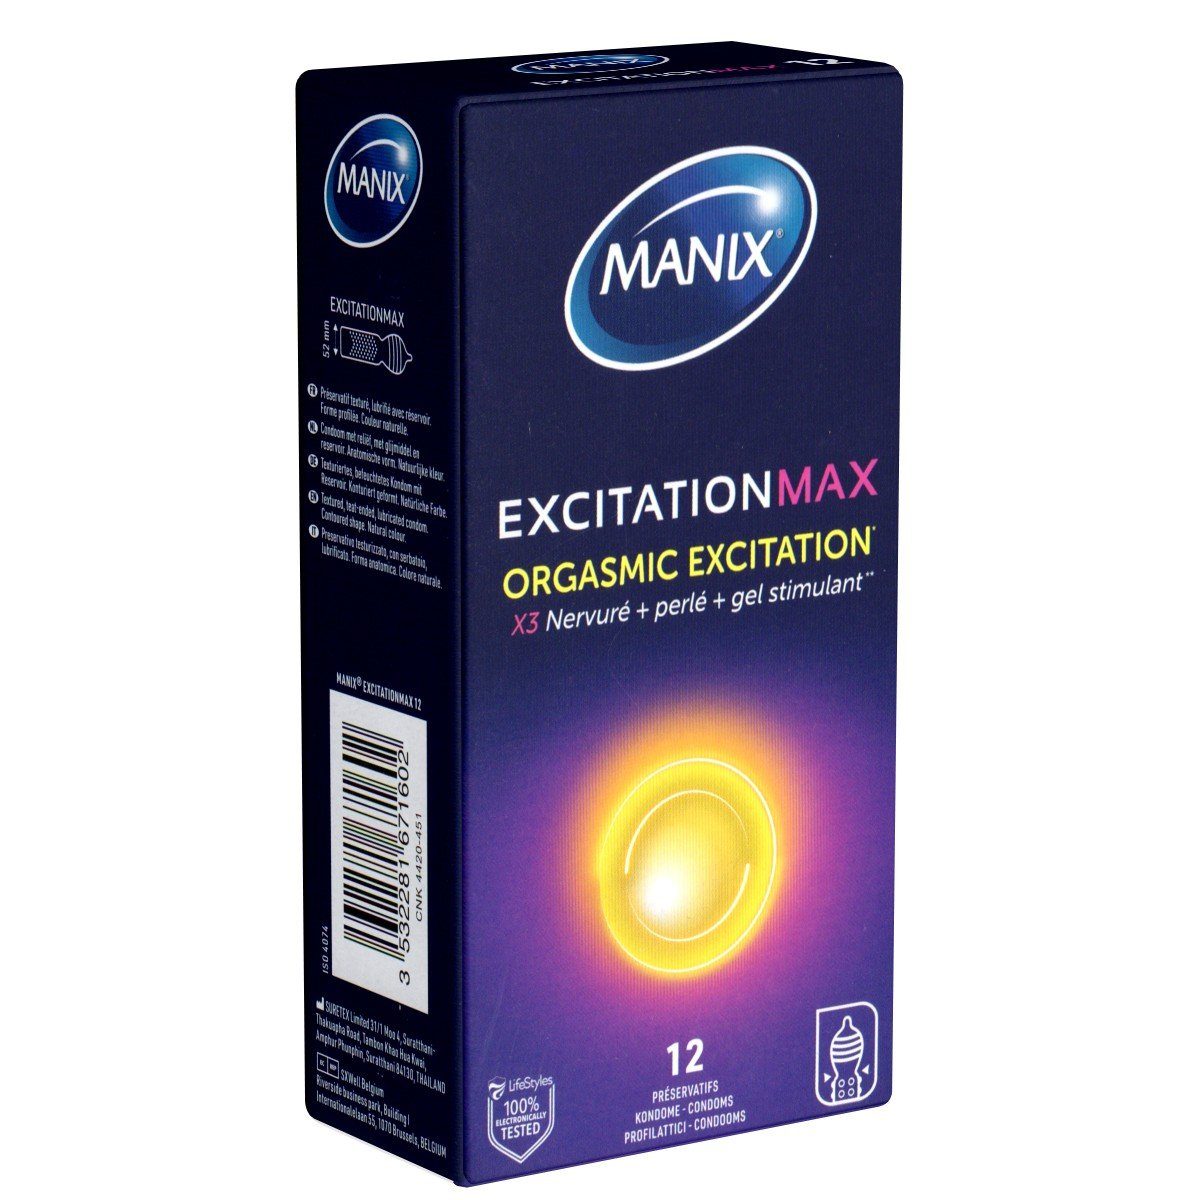 Manix Kondome Excitation Max - Orgasmic Excitation (stimulierend & wärmend) Packung mit, 12 St., gerippt-genoppte Kondome mit Wärme-Effekt, Orgasmus-Kondome für ein ungeahntes Lustgefühl